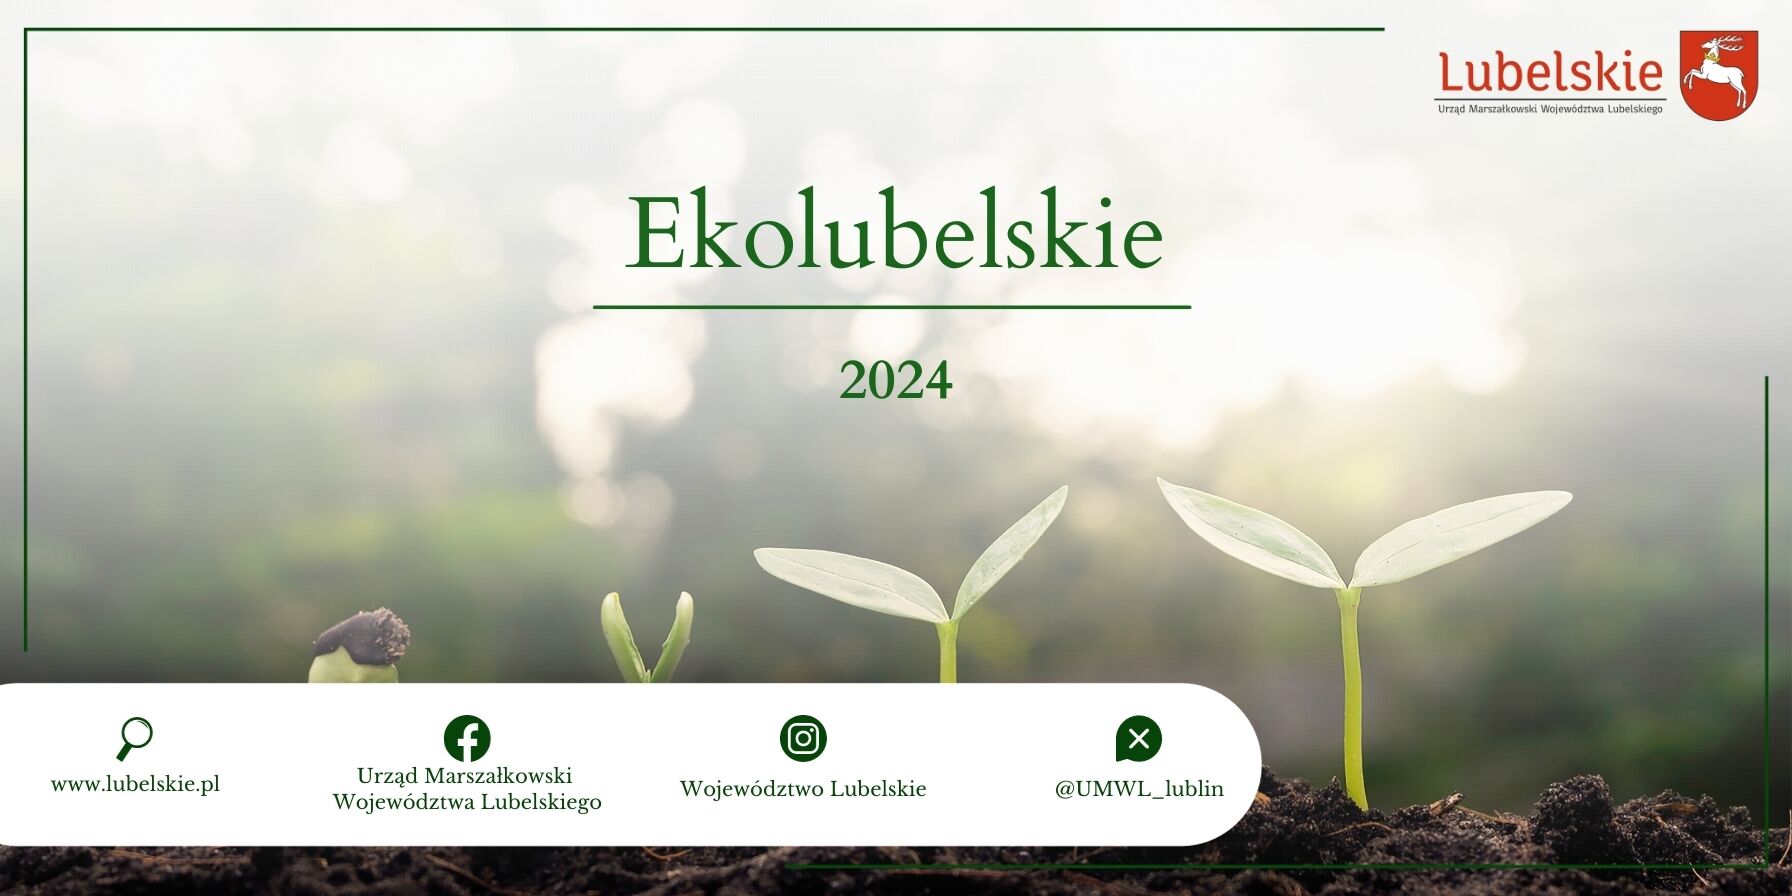 Alternatywny opis zdjęcia: Początkowe fazy wzrostu roślin ukazane na reklamie „EkoLubelskie 2024”. Z lewej strony kiełkujące nasiona, w centrum młode rośliny, w tle rozmyte drzewa i światło słoneczne.